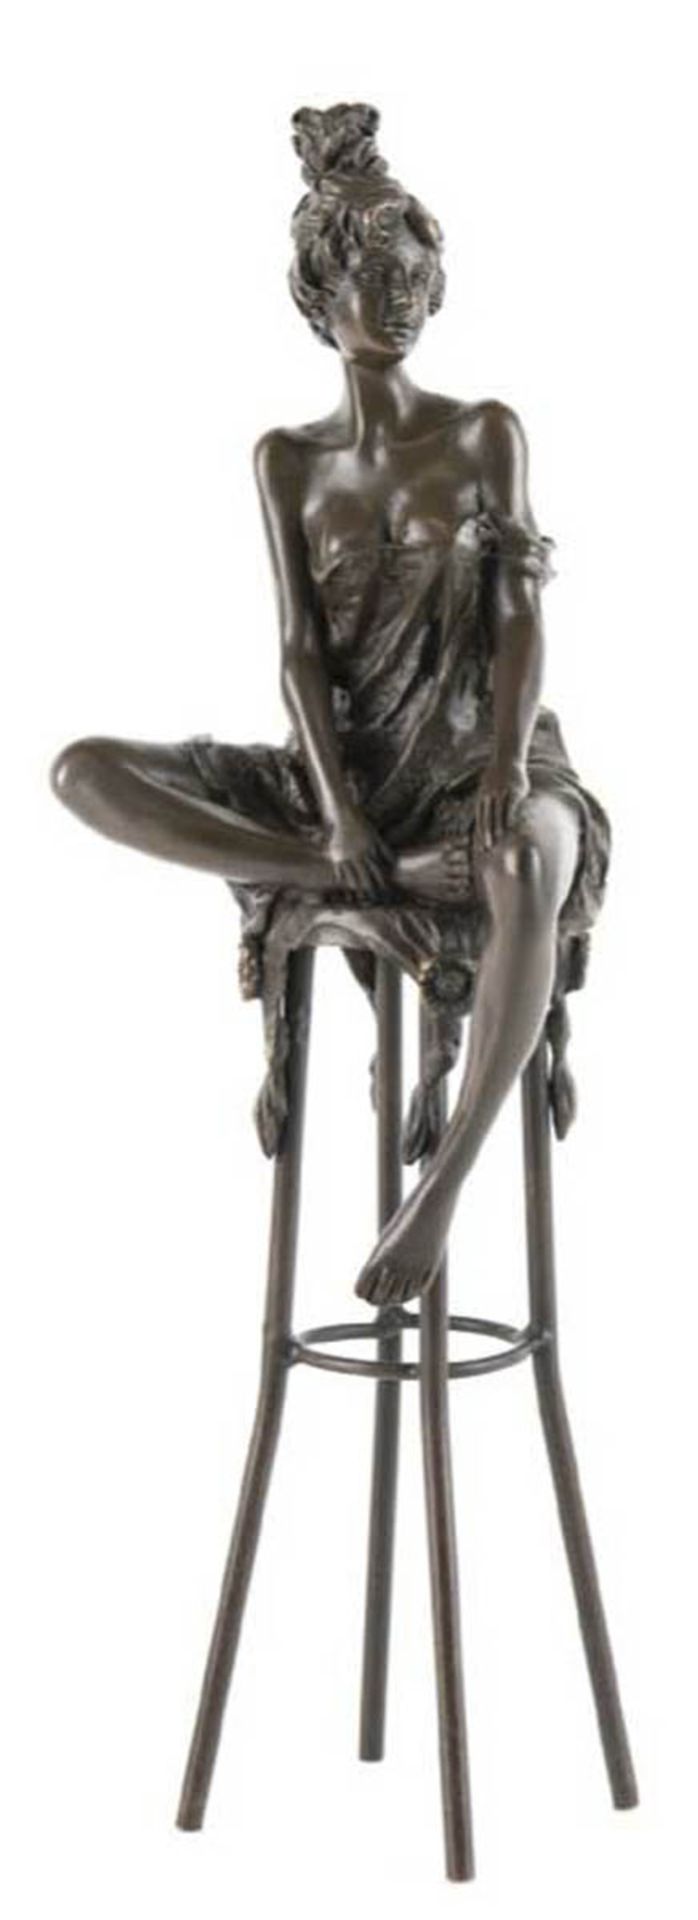 Bronze-Figur "Junge Dame im Negligee auf Barhocker sitzend", Nachguß 20. Jh., sign."Pierre